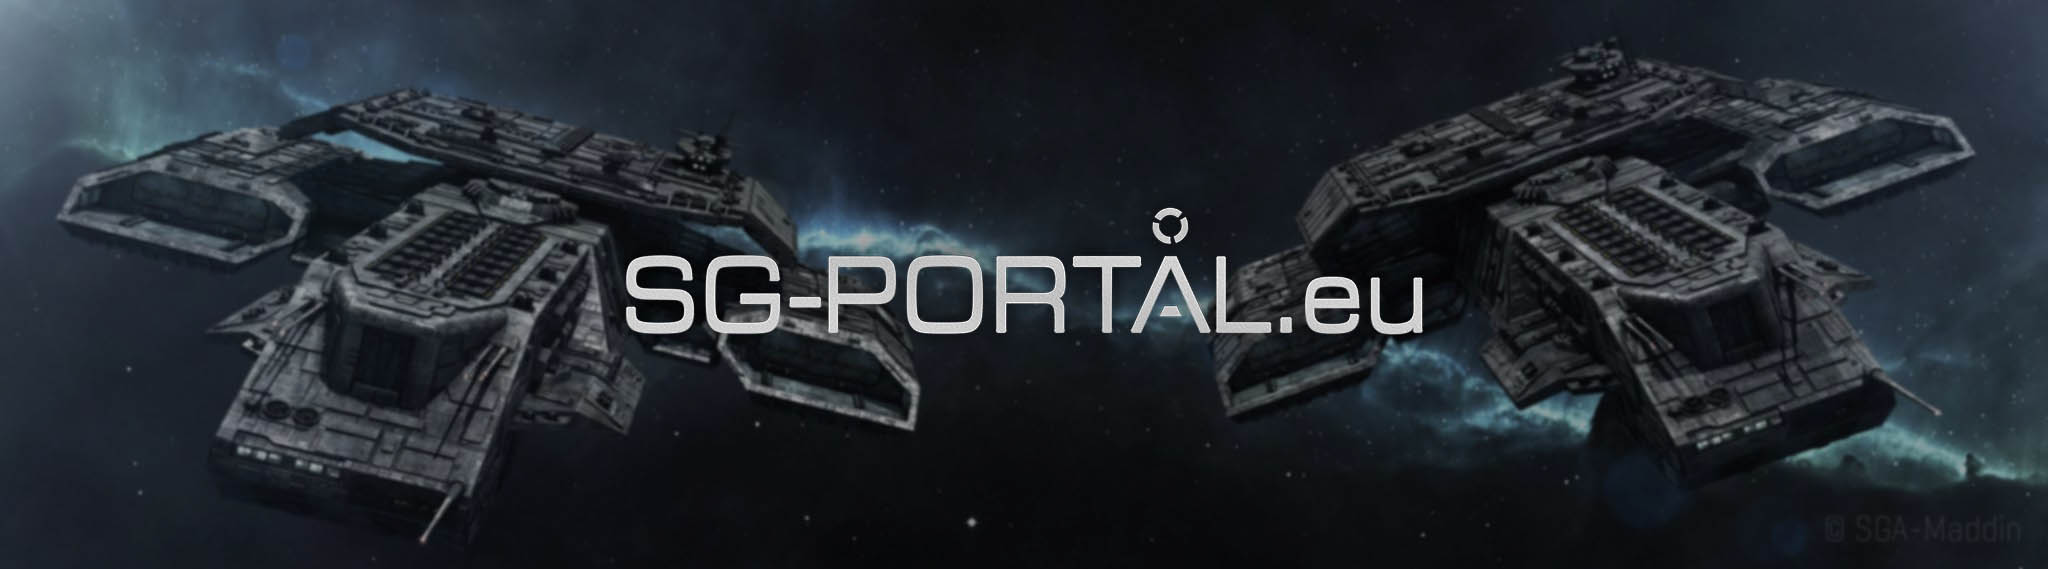 Vítejte na webu SG-PORTAL.eu